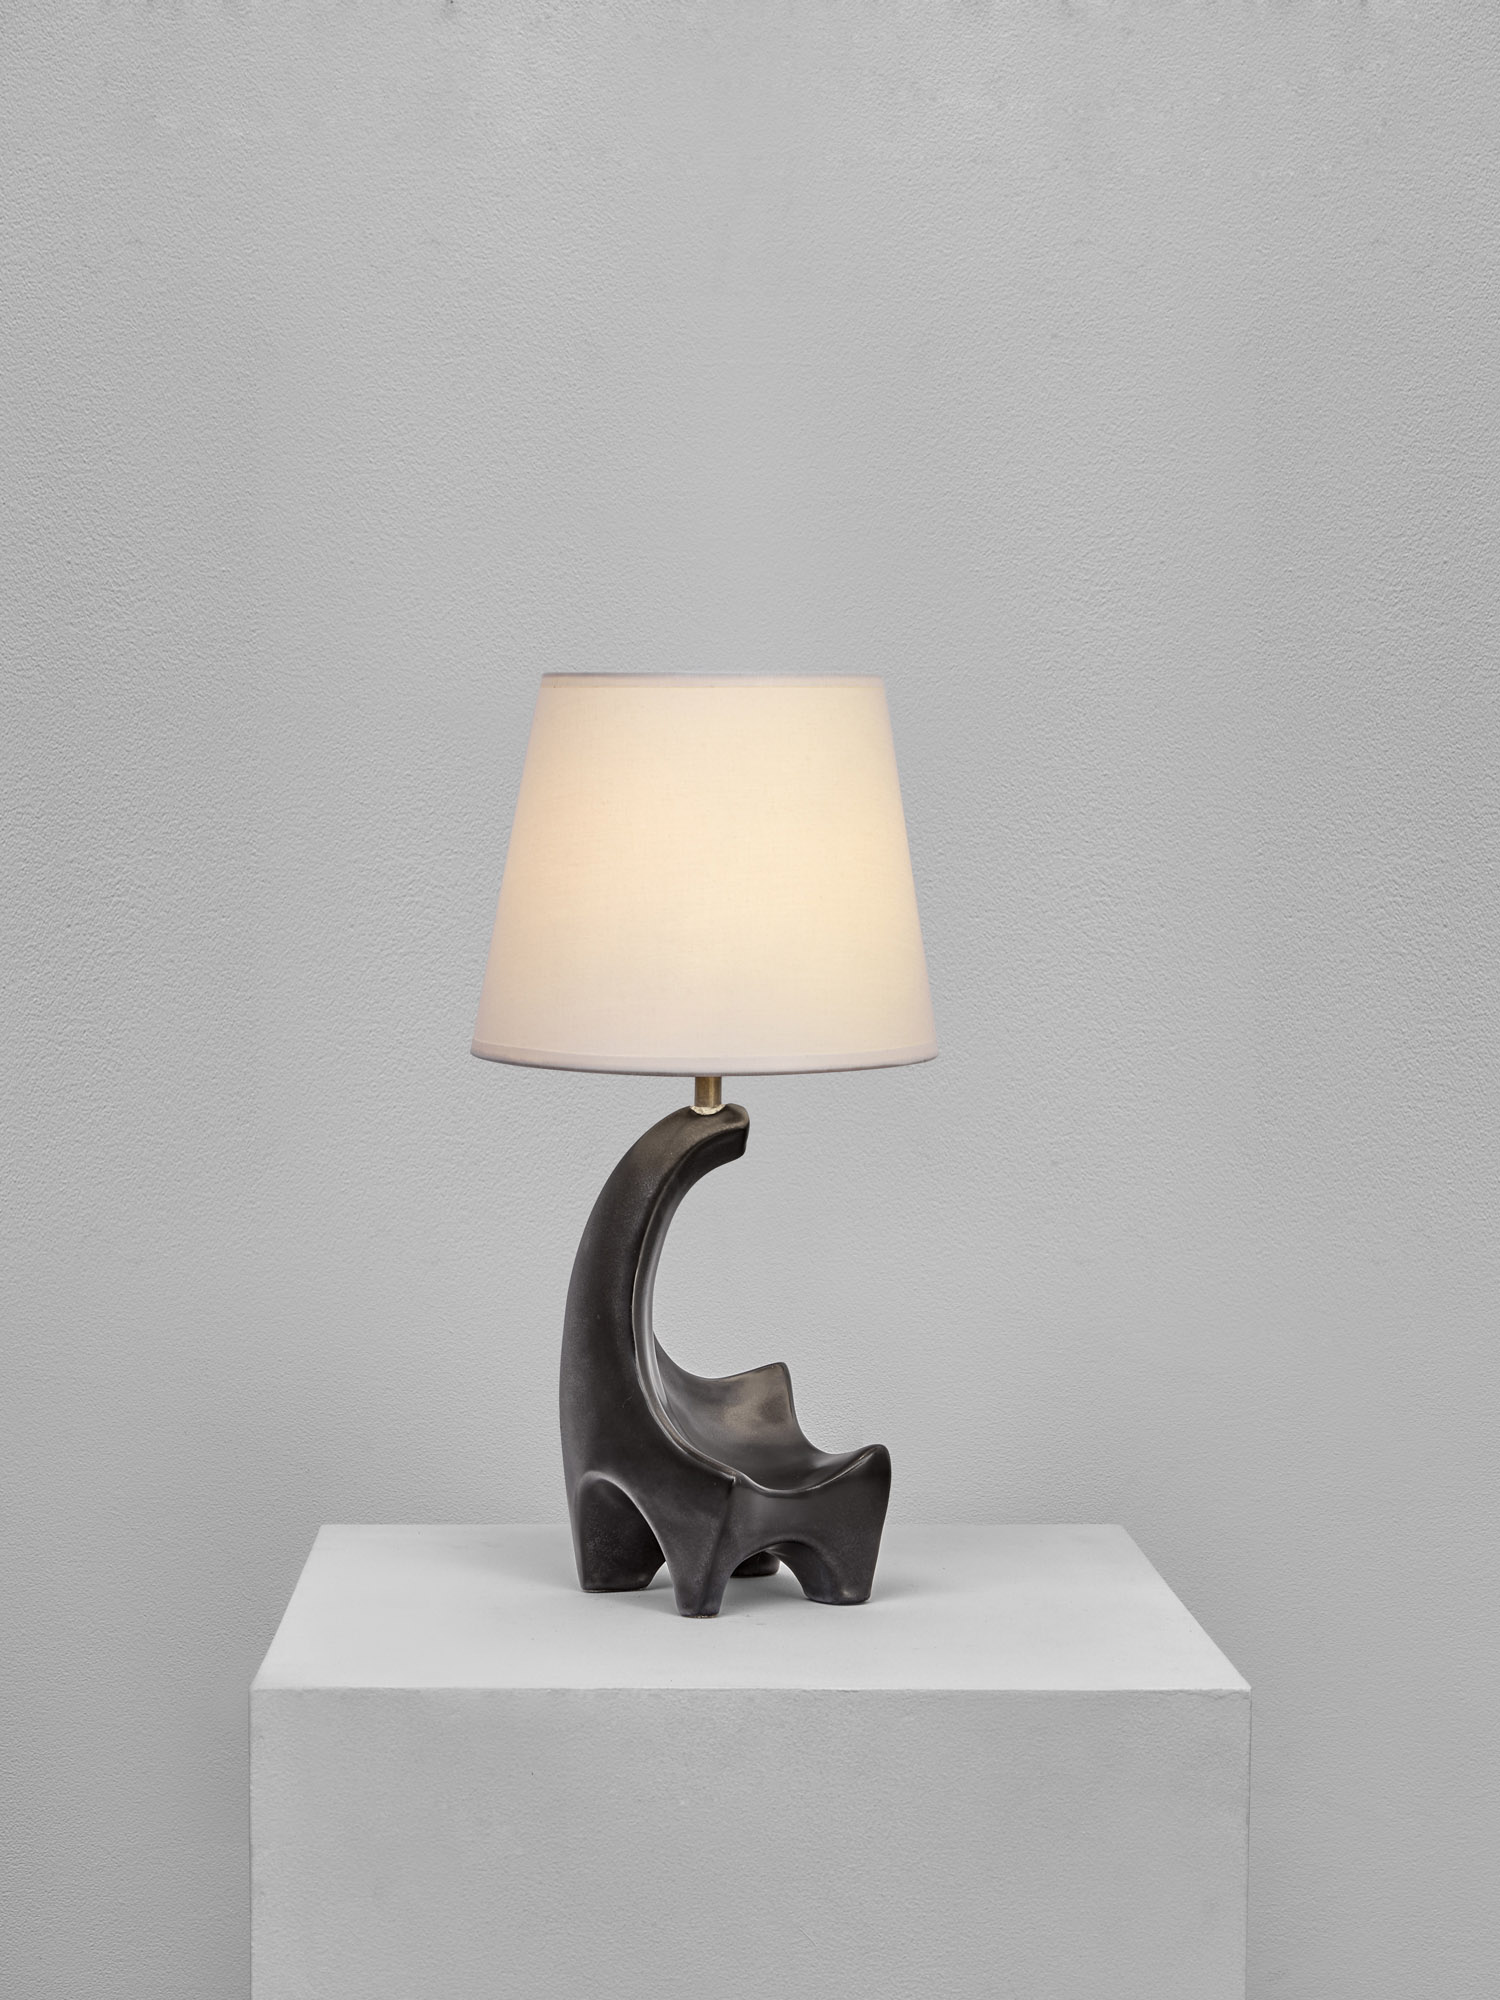 Georges Jouve, Zoomorphic lamp, vue 01